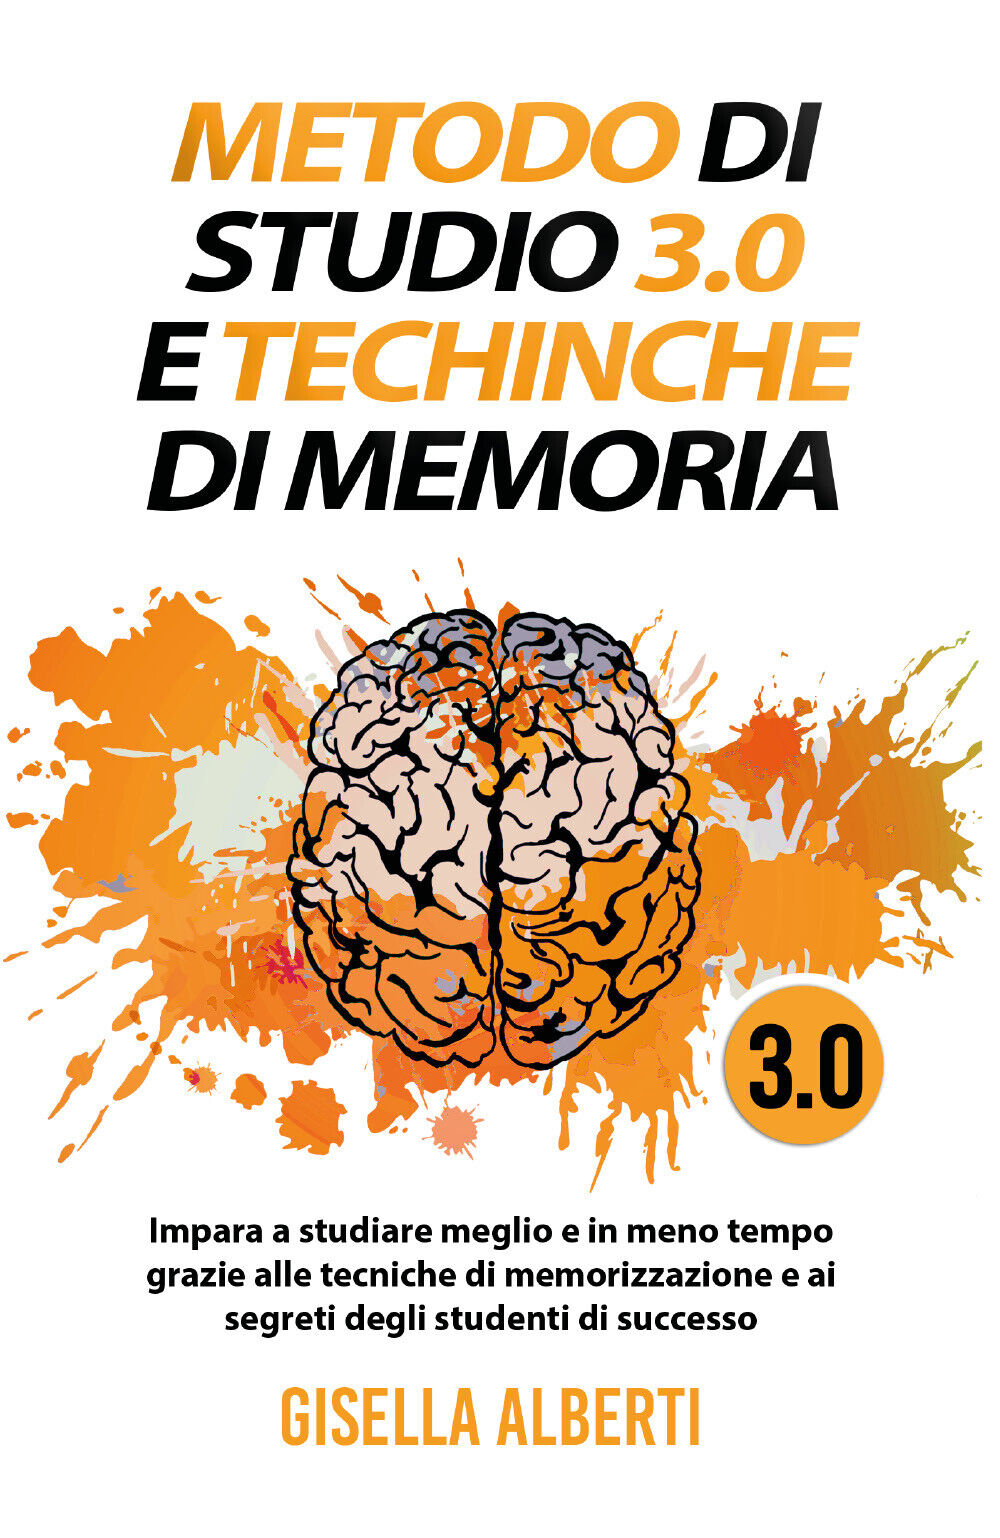 METODO DI STUDIO 3.0 E TECNICHE DI MEMORIA; Impara a studiare meglio e in meno